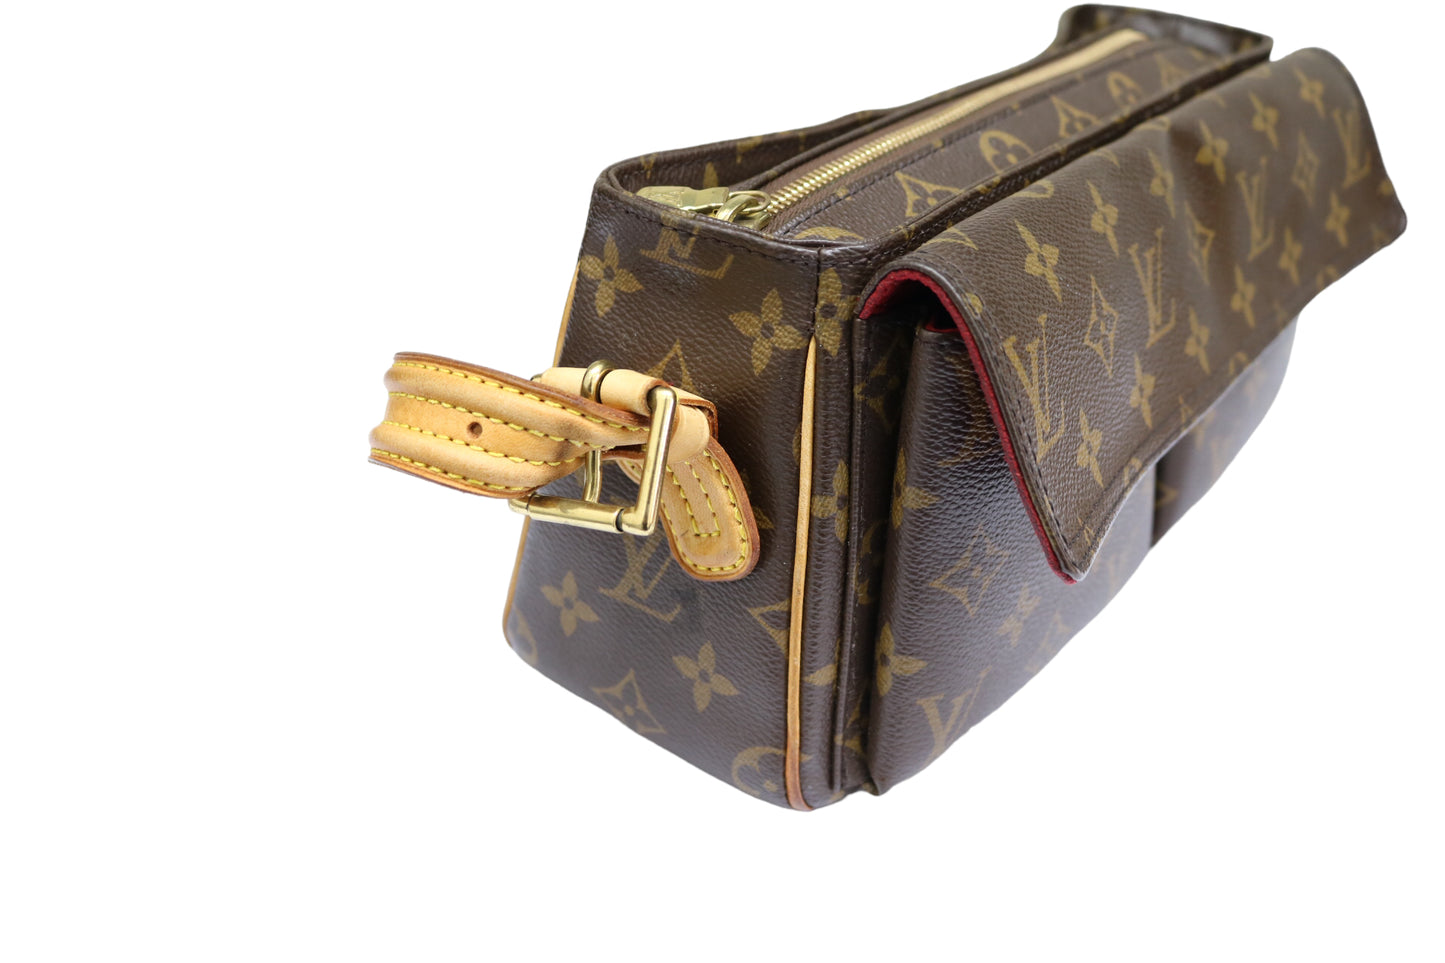 Authentic LOUIS VUITTON Viva-Cite MM Monogram Shoulder Bag